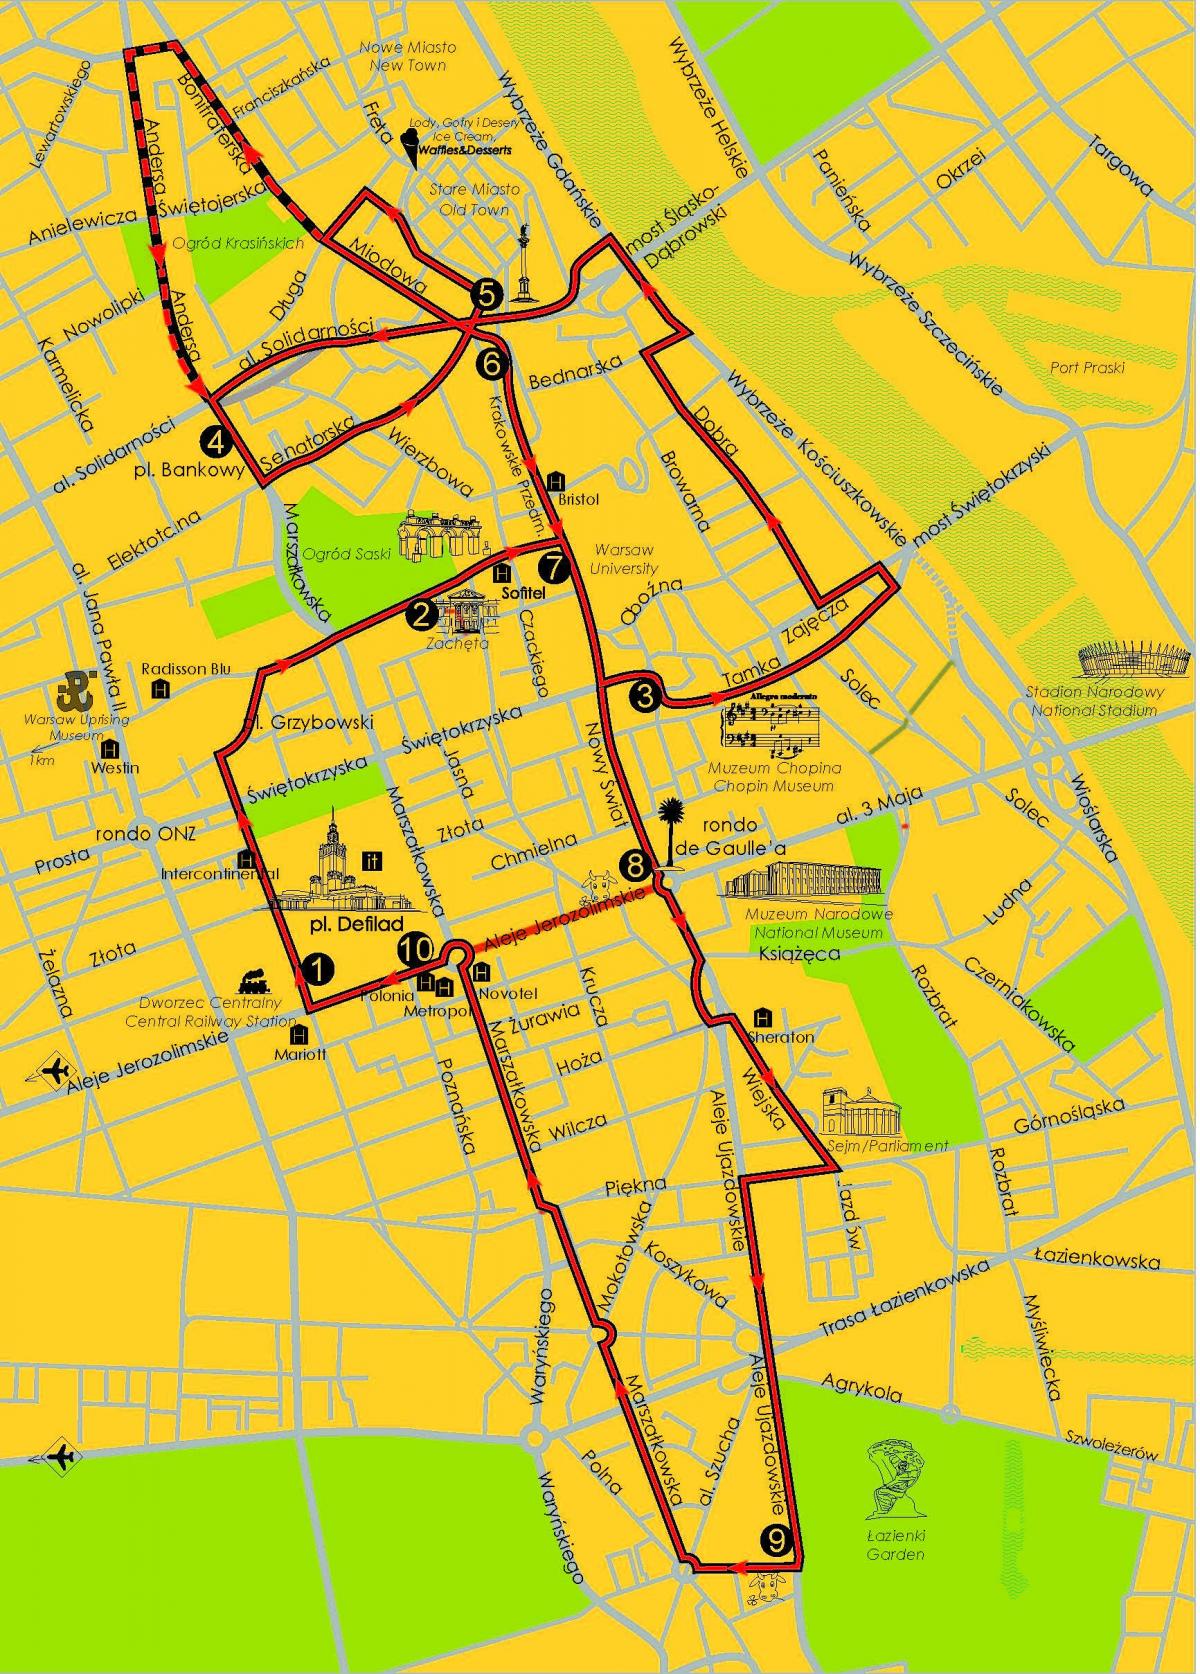 Mapa Warszawy autokarem 